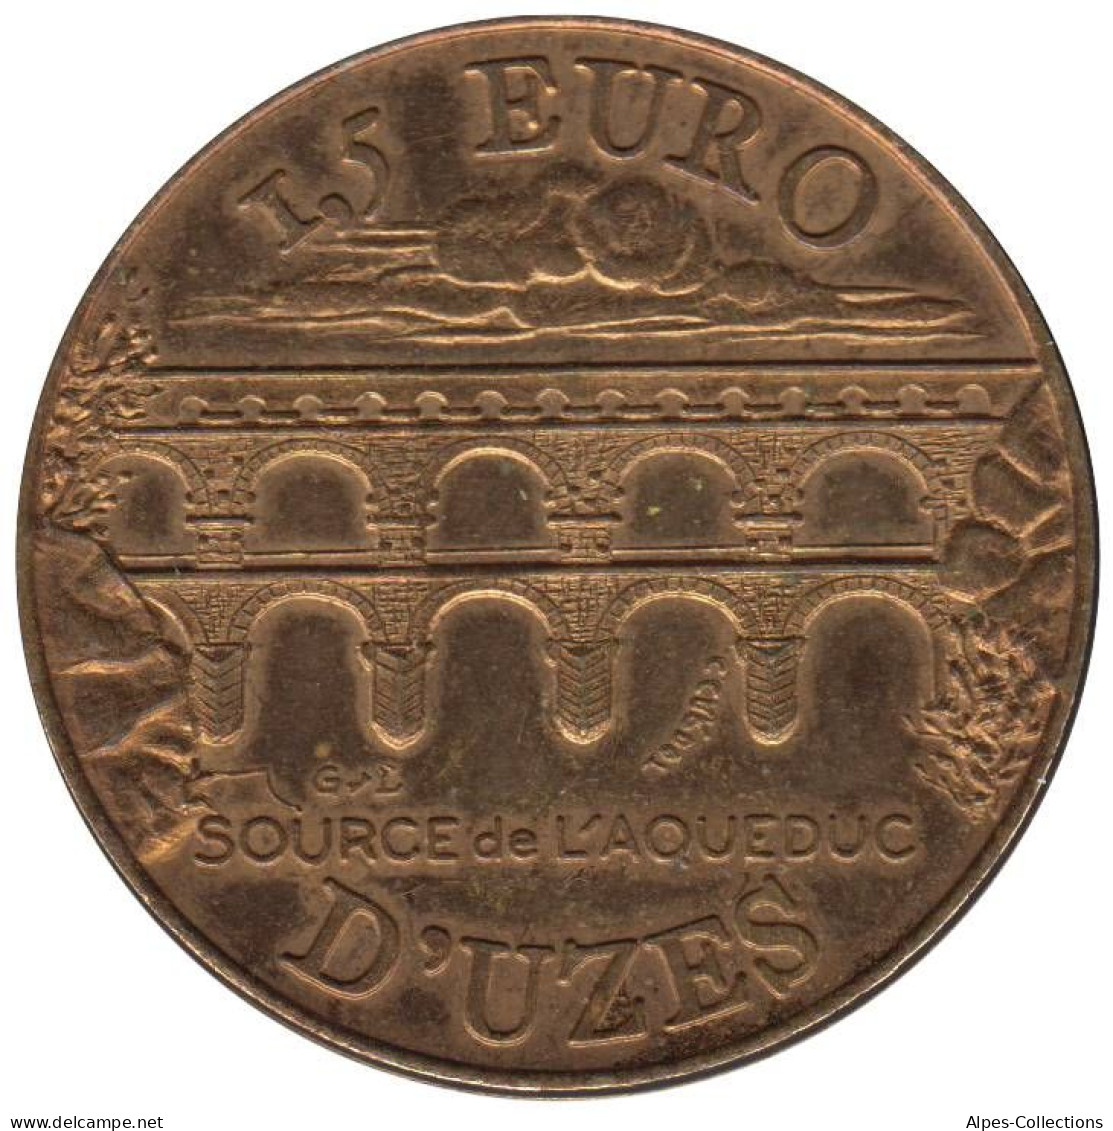 UZES - EU0015.1 - 1,5 EURO DES VILLES - Réf: NR - 1997 - Euro Der Städte